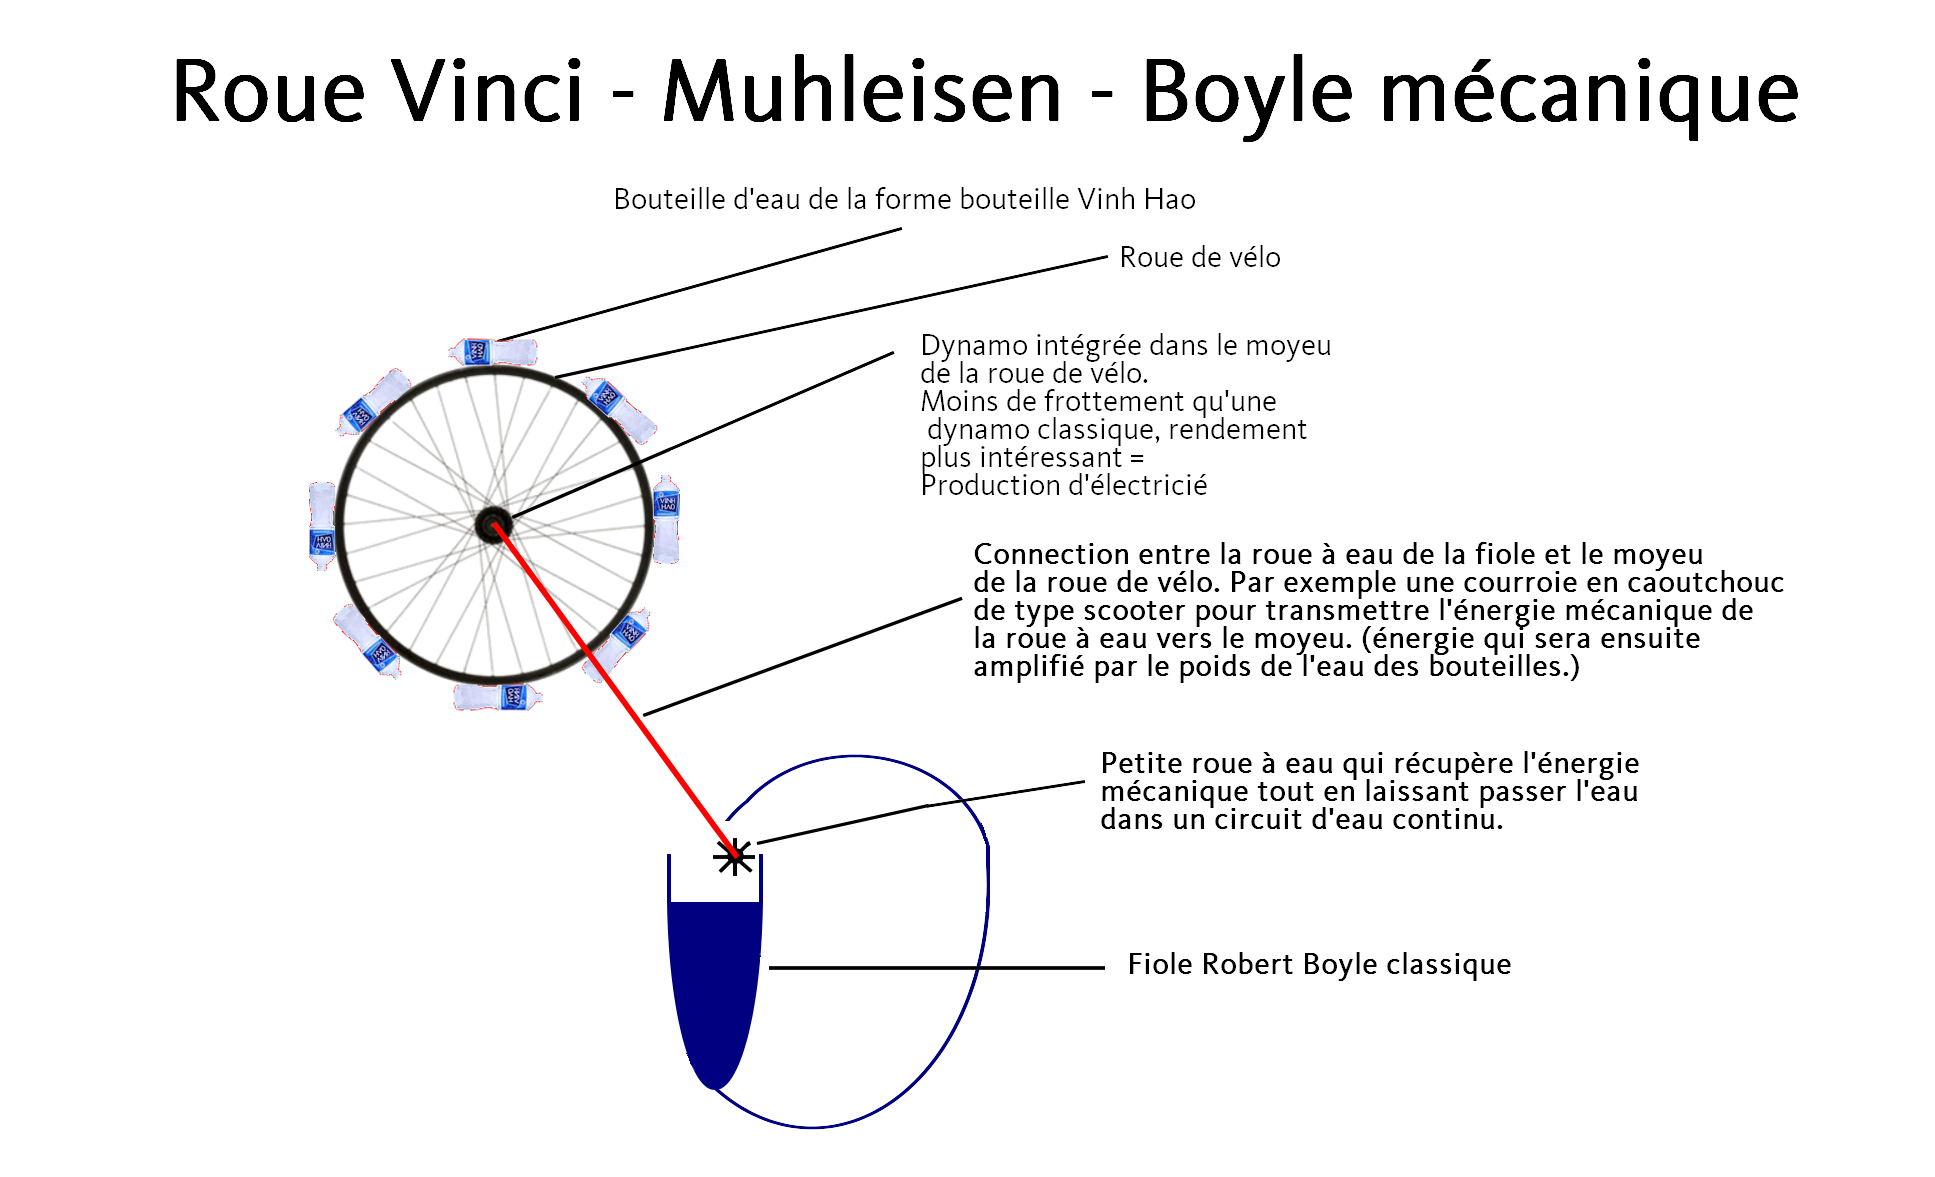 La Roue Vinci Muhleisen Boyle mécanique